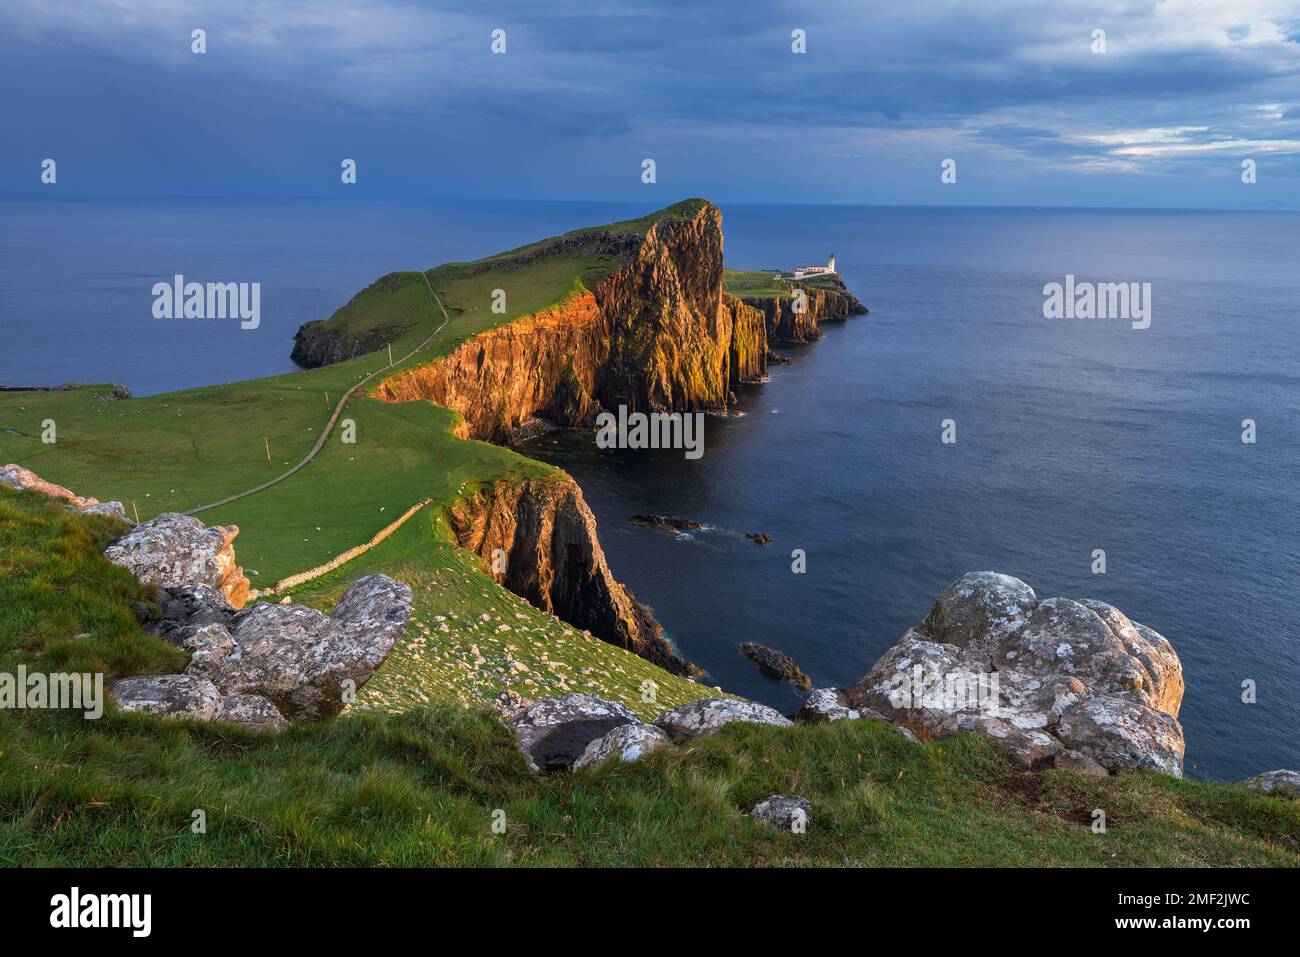 Le phare de Neist point baignait de lumière dorée lors d'une belle soirée d'été. Île de Skye, Écosse, Royaume-Uni. Banque D'Images